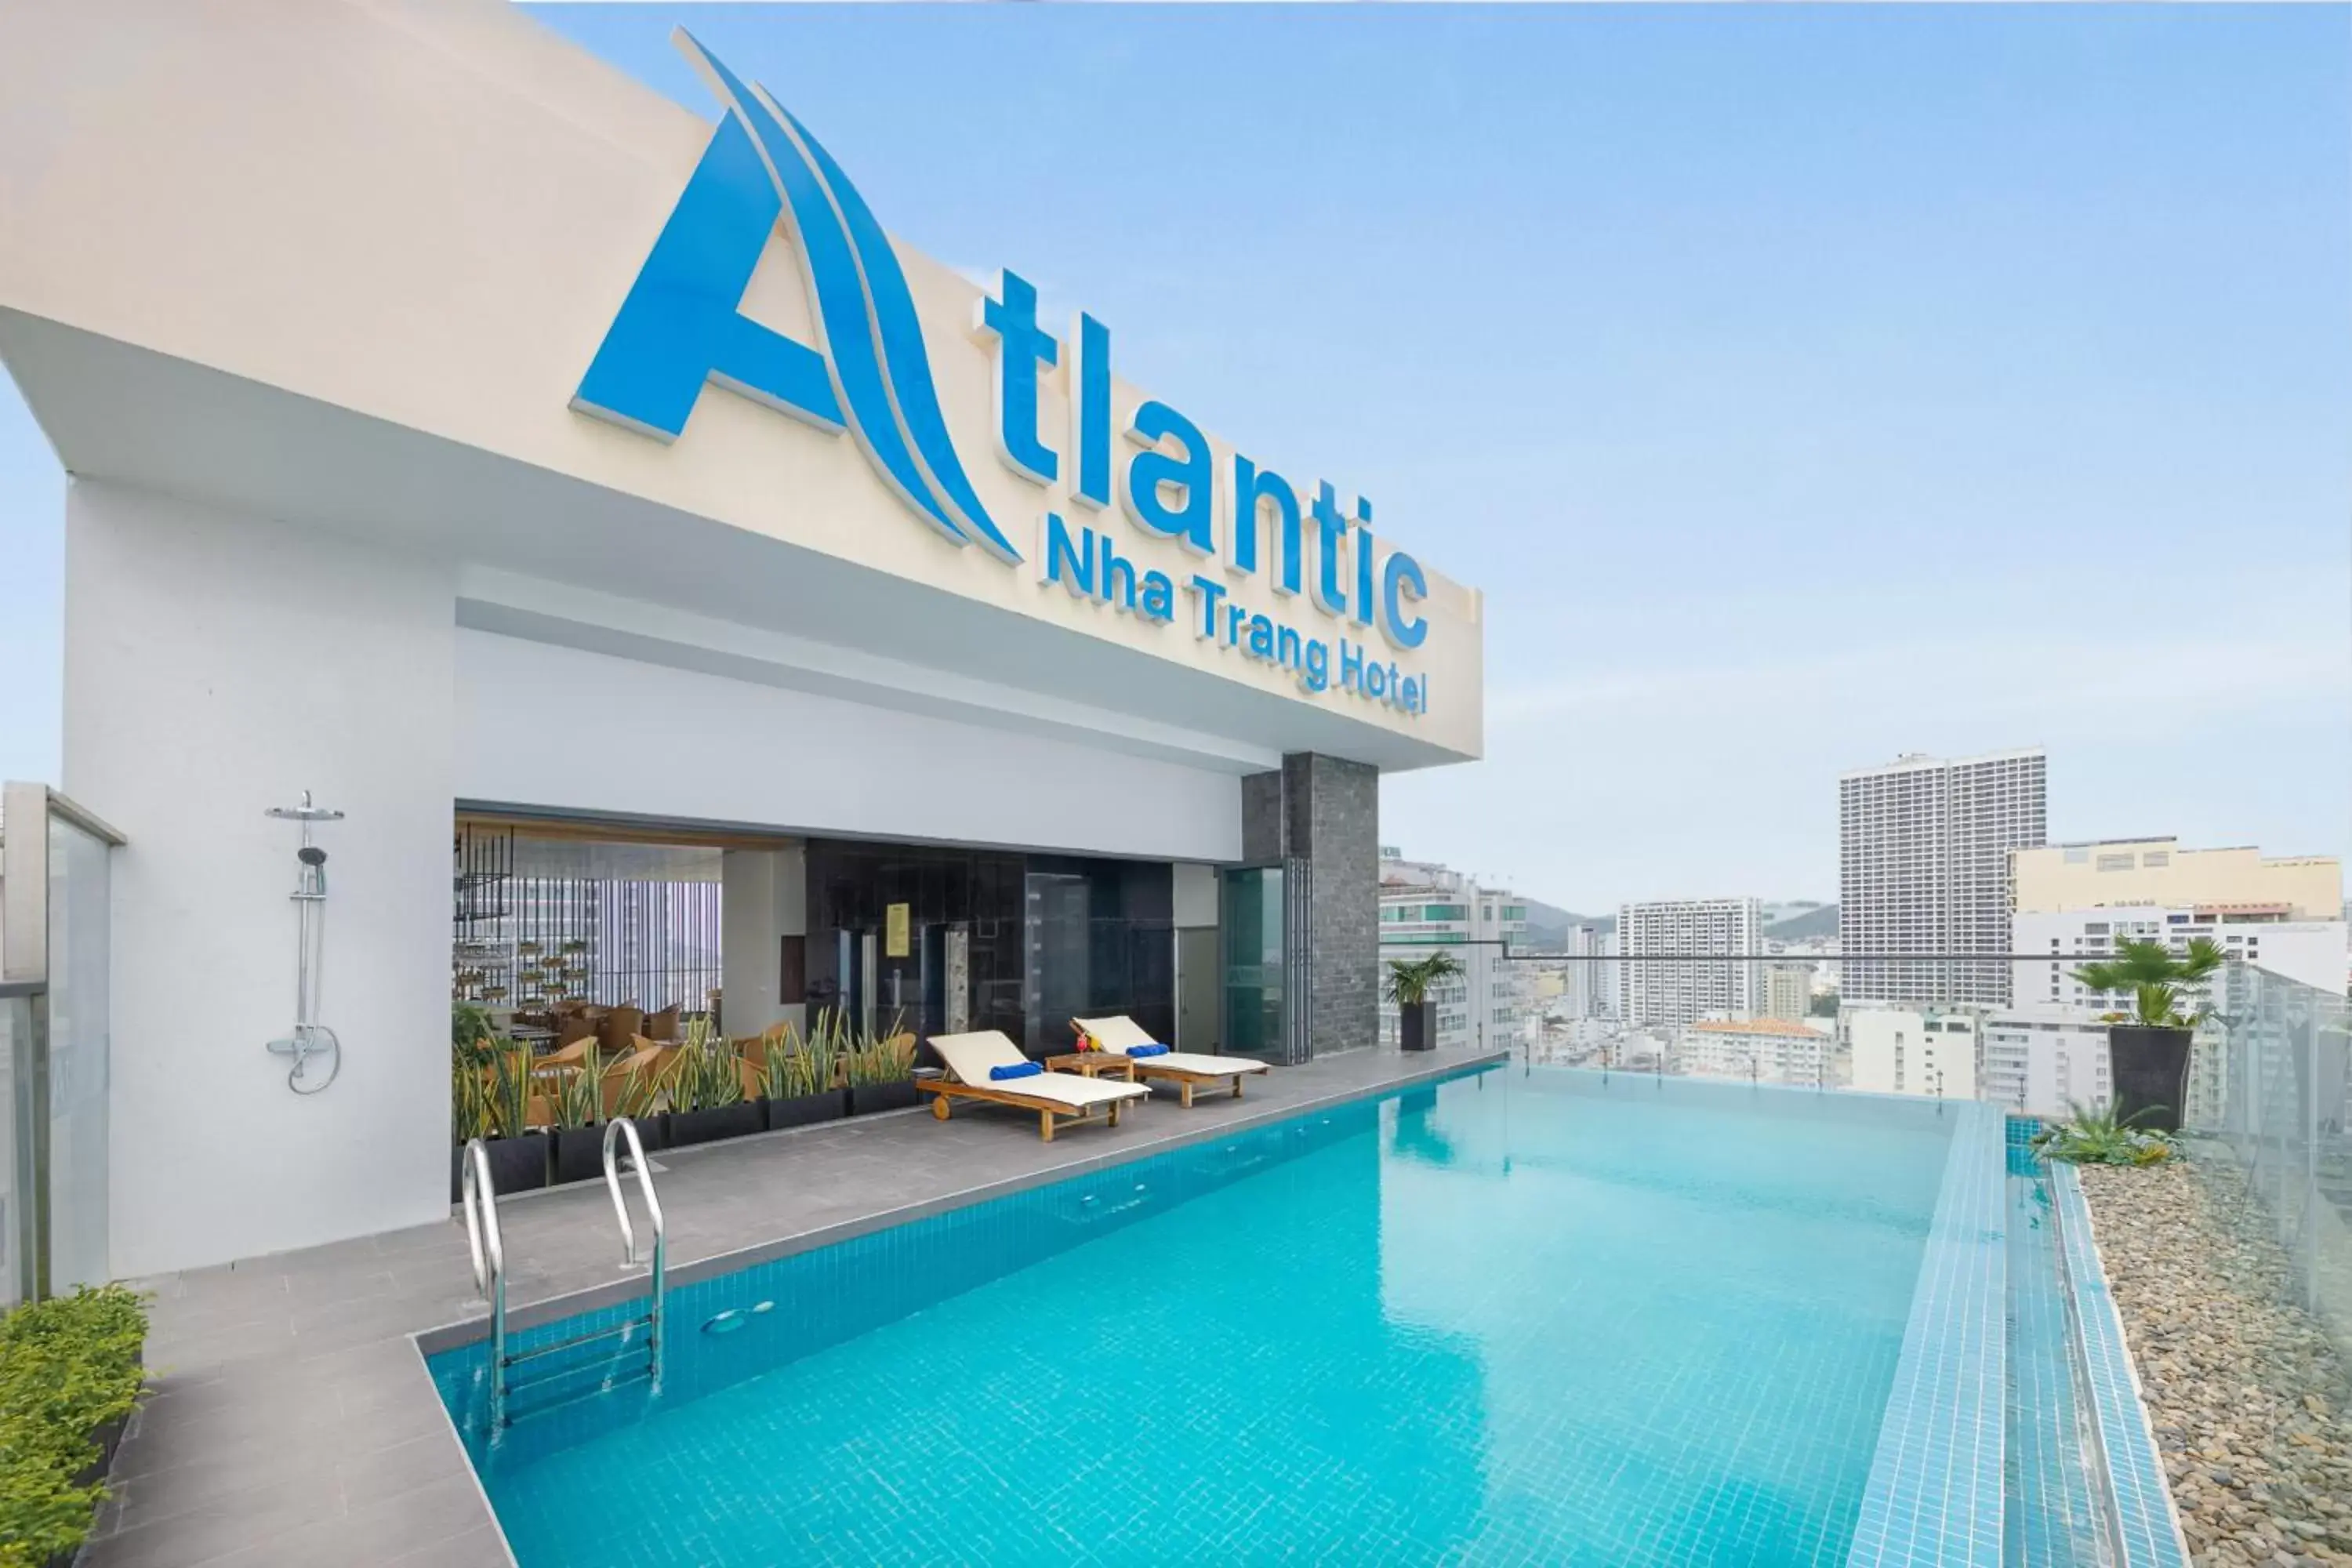 Swimming pool in Atlantic Nha Trang Hotel